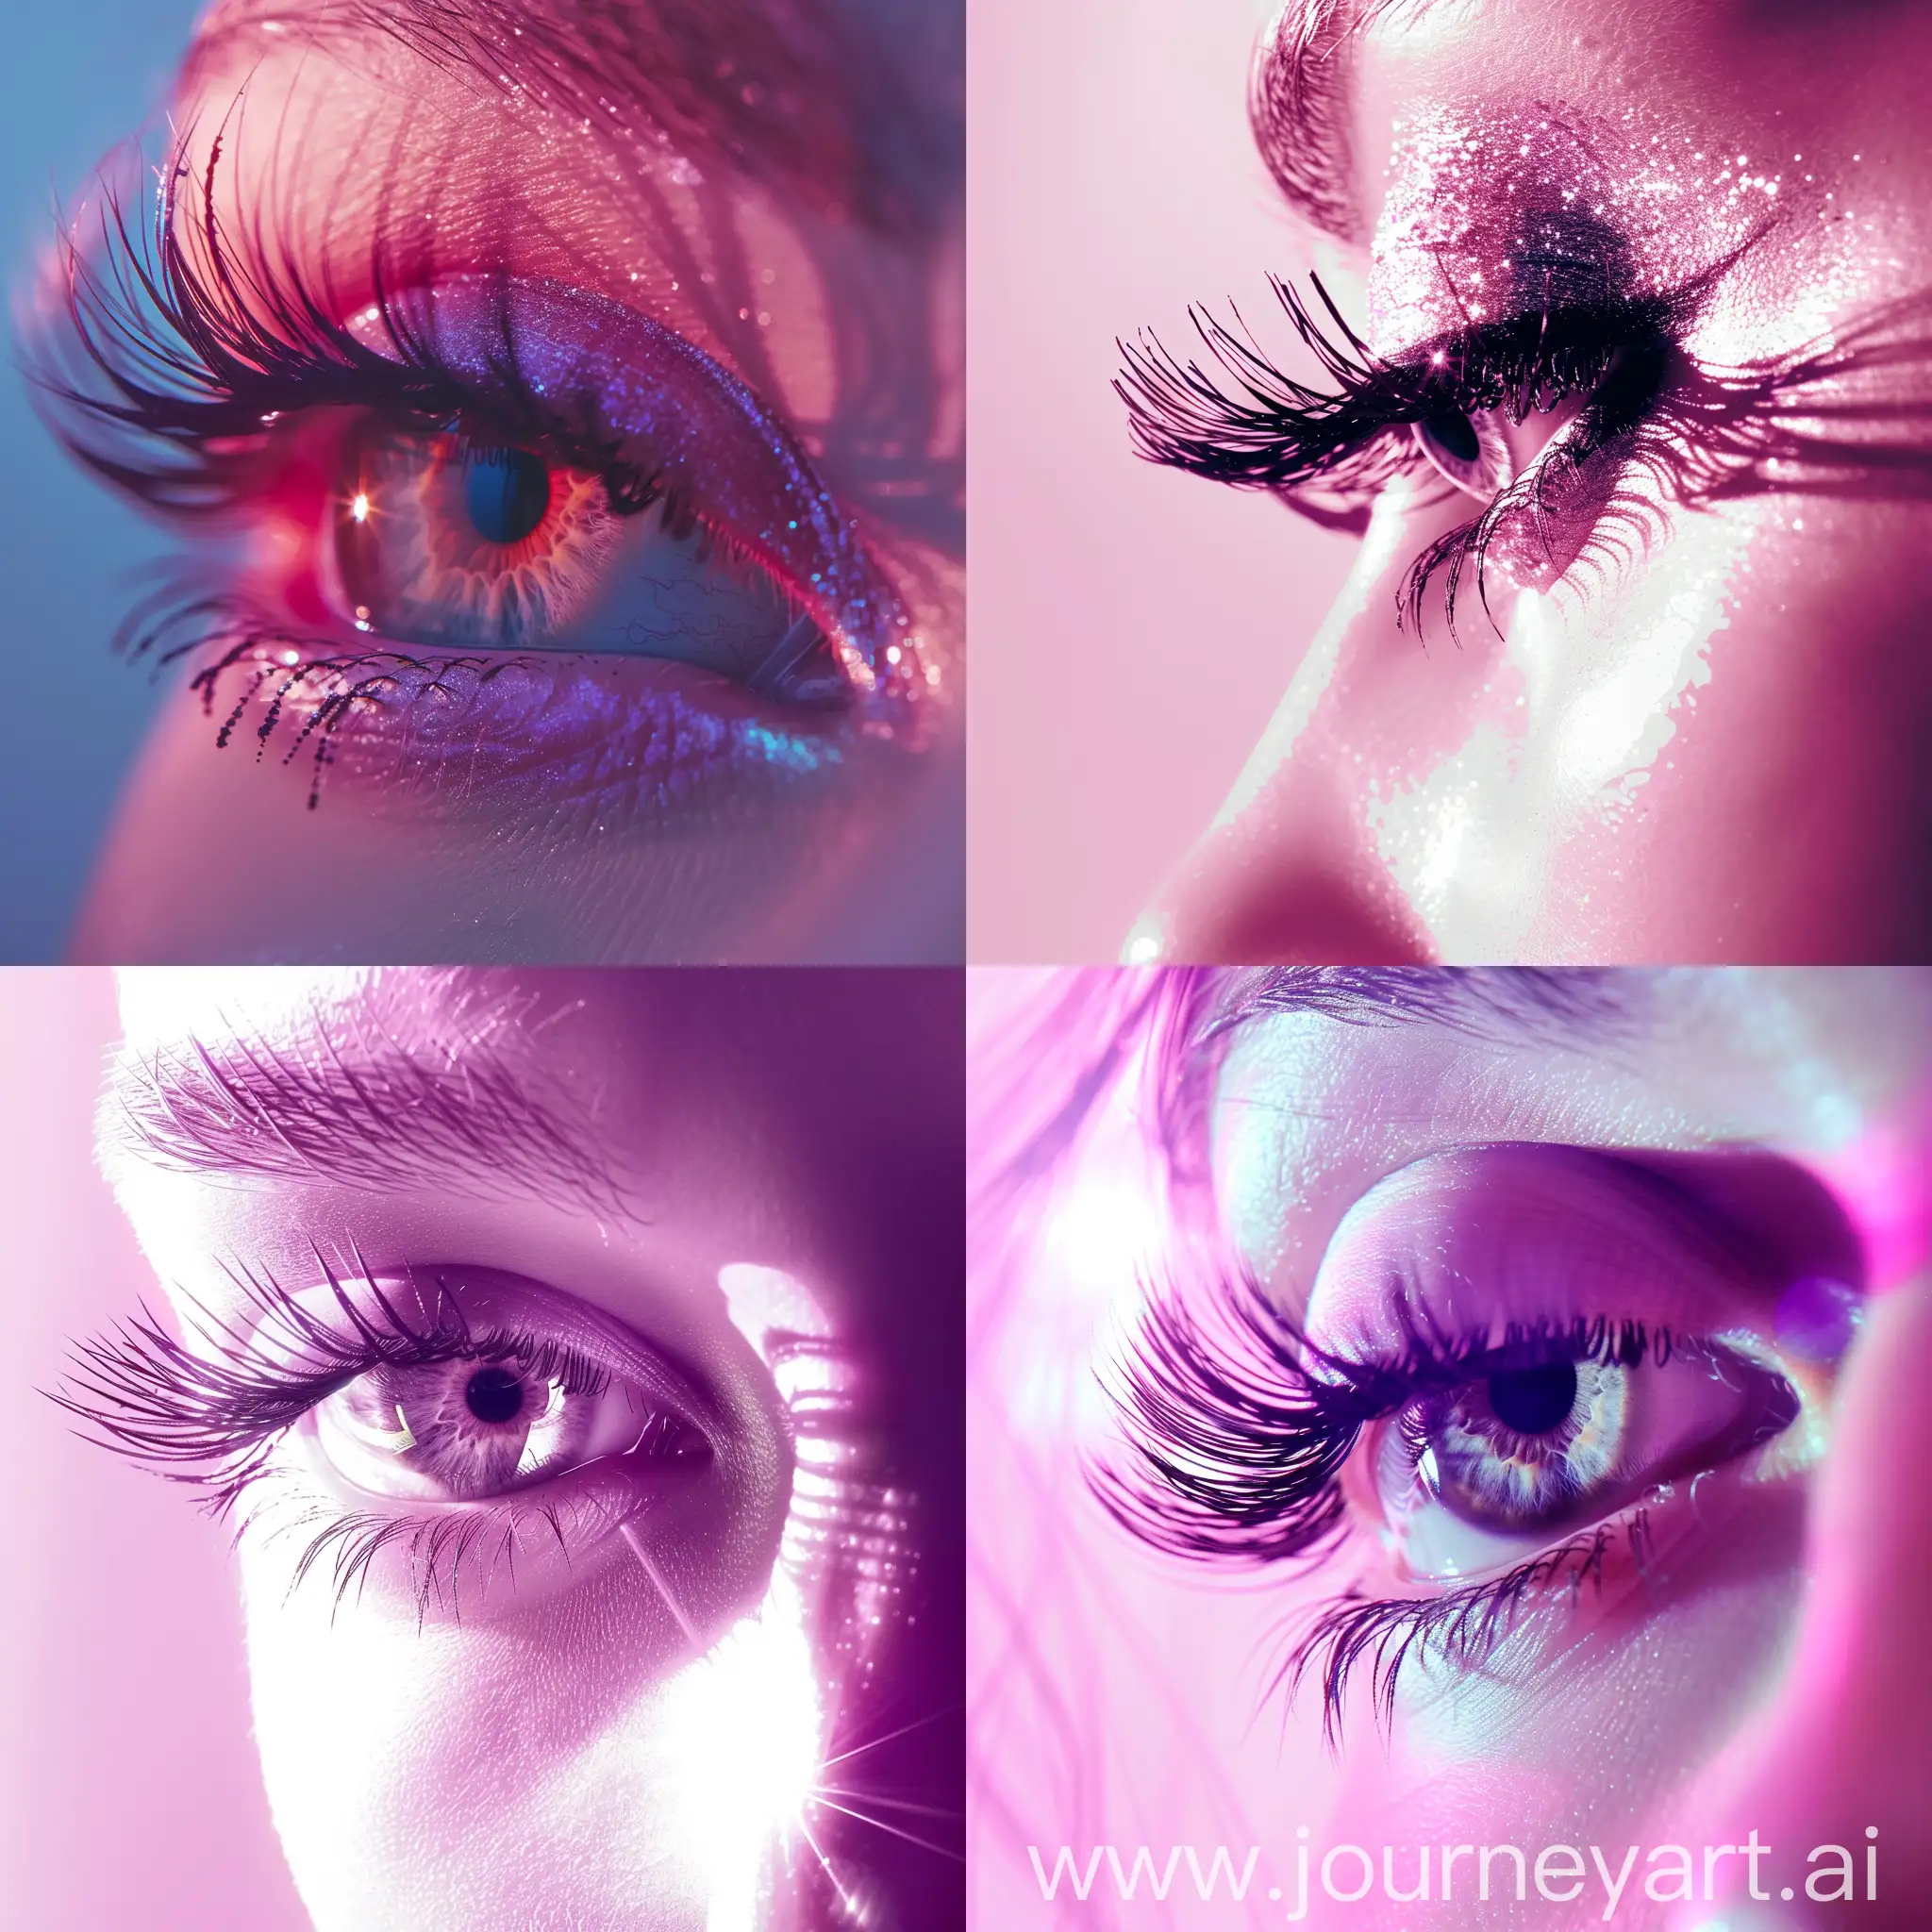 Glamorous-Pink-Background-with-Sparkling-Eyes-and-Long-Eyelashes